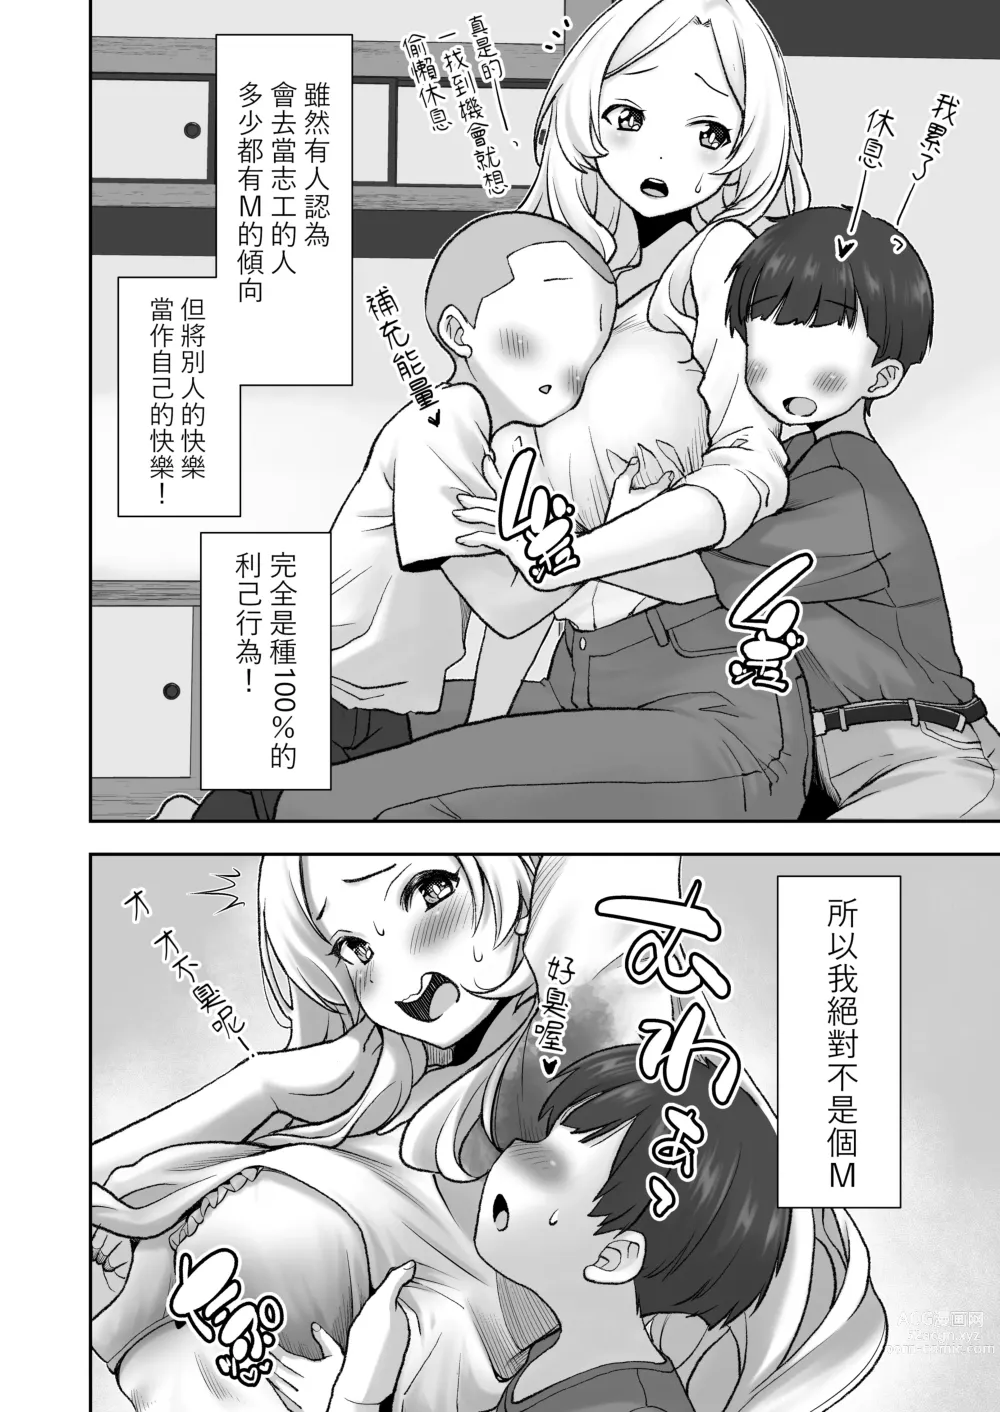 Page 4 of doujinshi Mura ni wa Juku ga Nai no de Watashi ga Benkyou wo Oshiete-imasu.